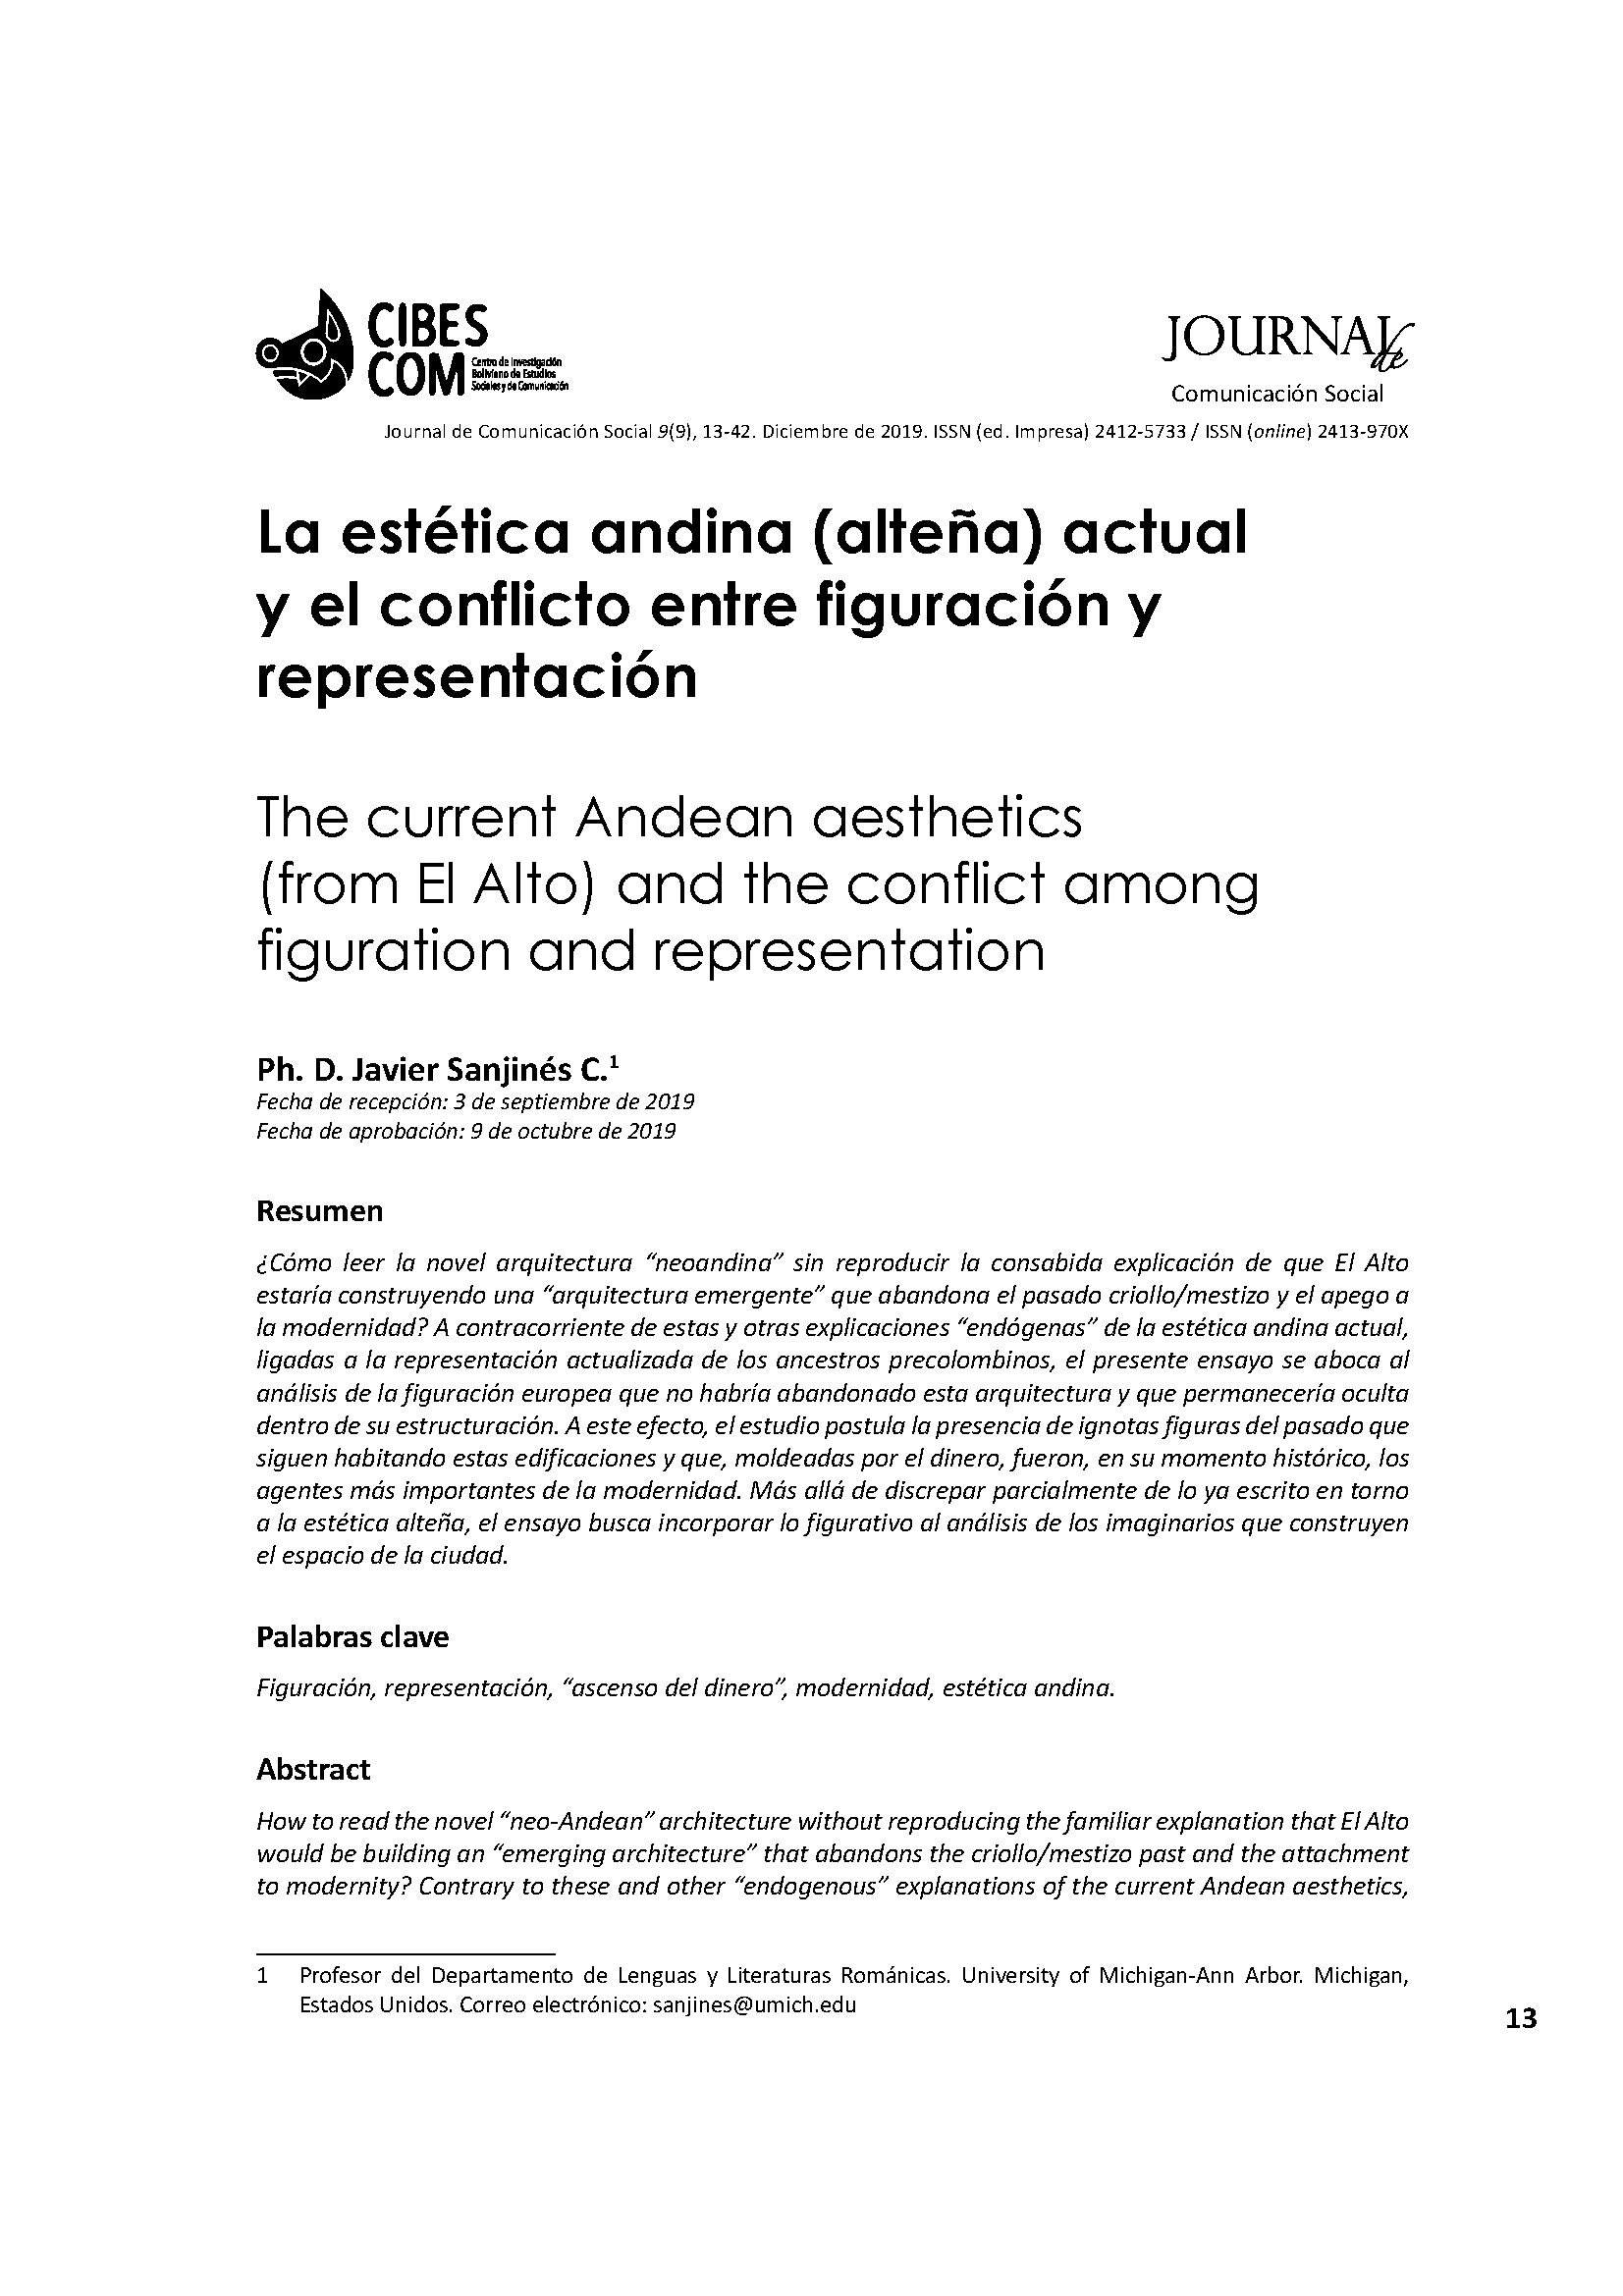 La estética andina (alteña) actual y el conflicto entre figuración y representación